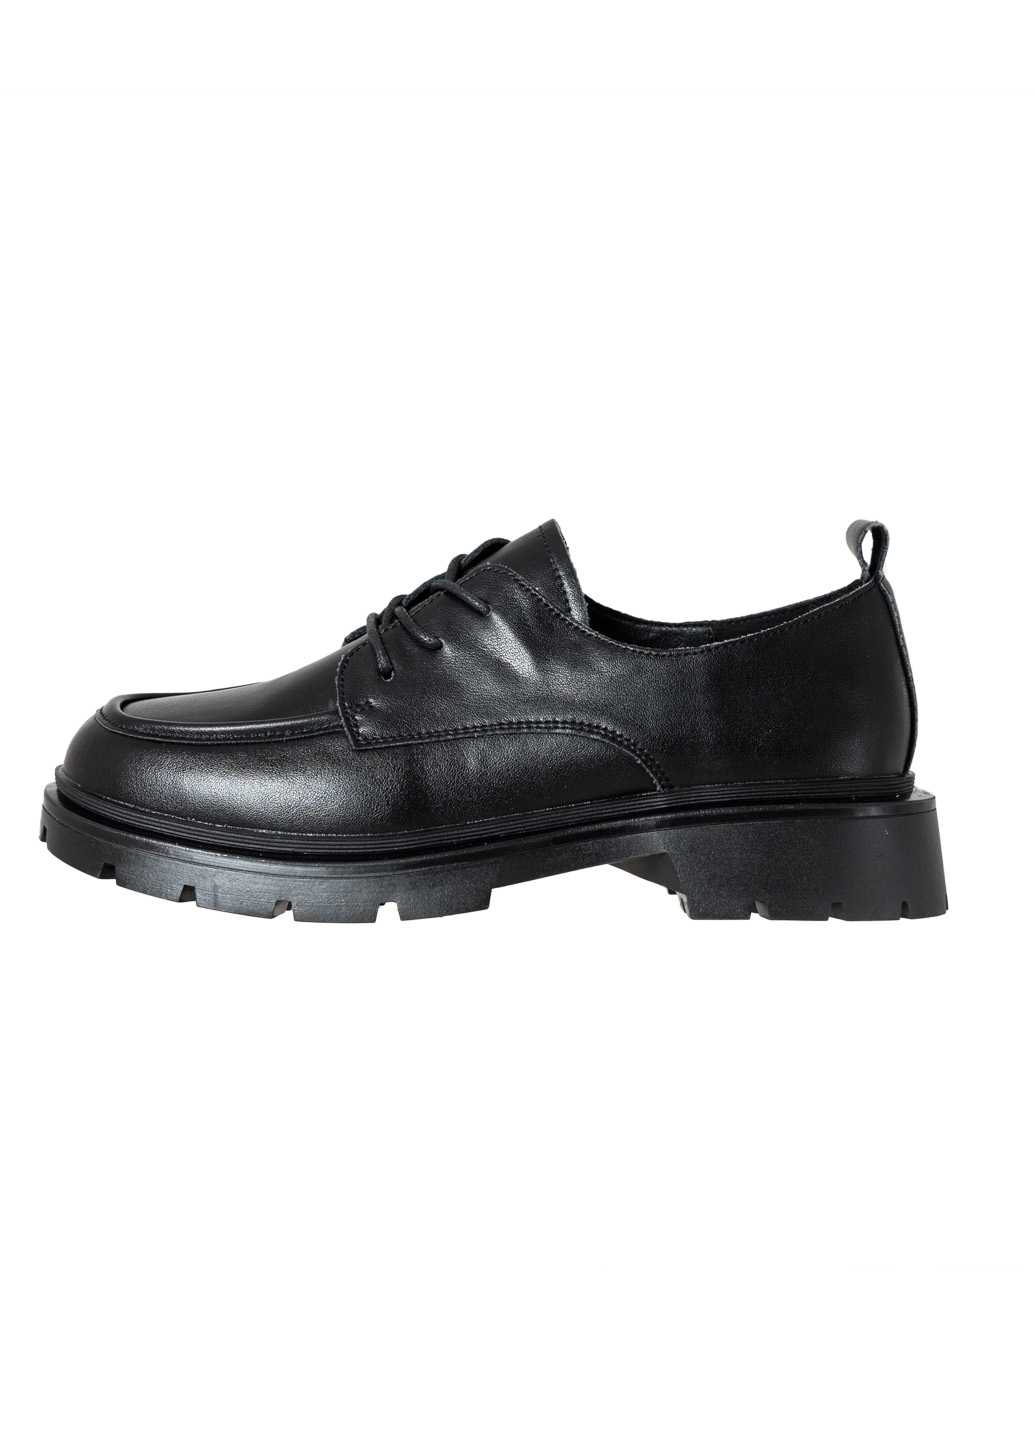 Жіночі туфлі Lifexpert чорного кольору з натуральної шкіри